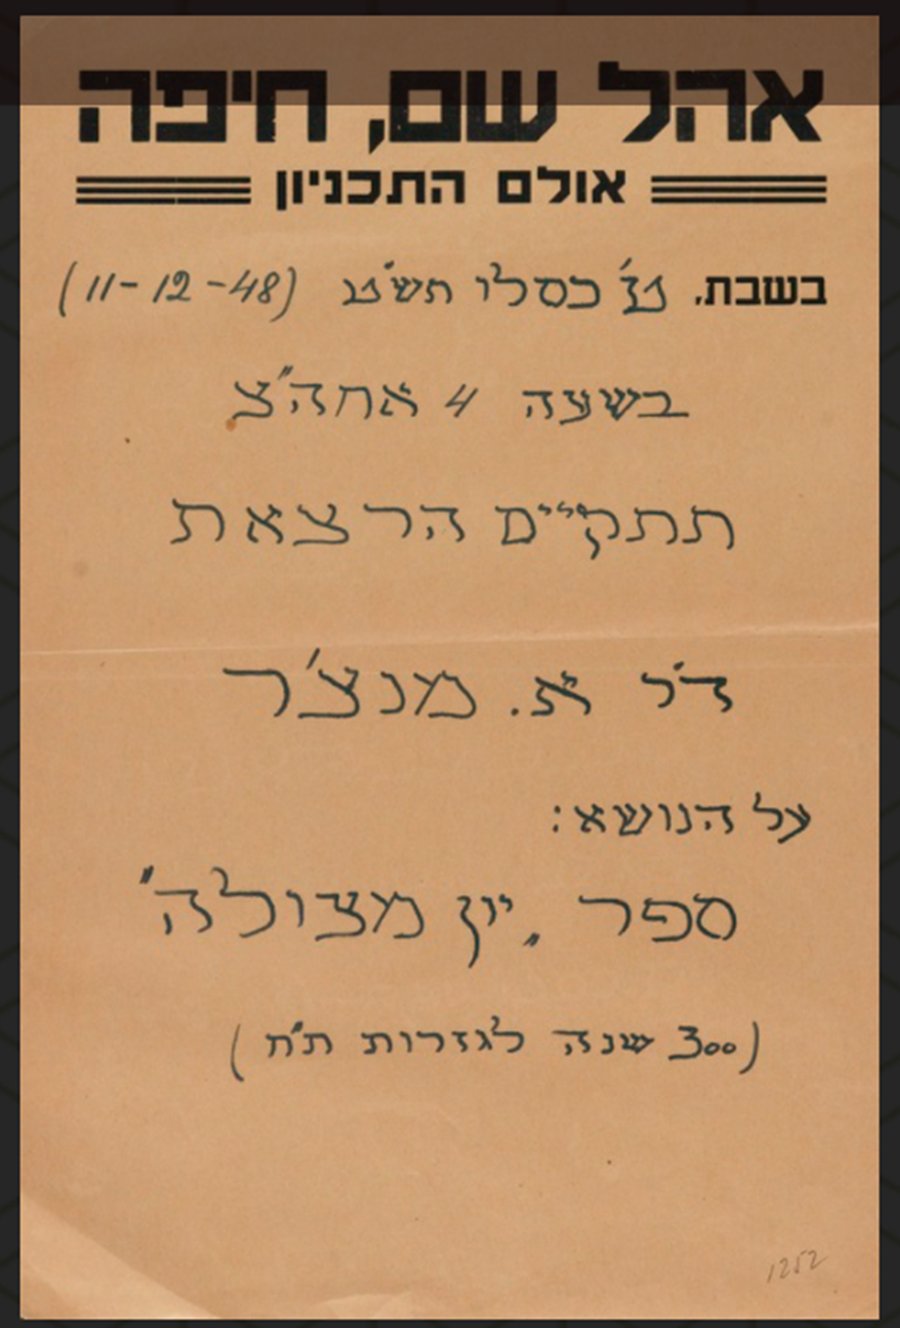 הרצאה על ספר יון מצולה בשנת תש"ט (1949) בחיפה